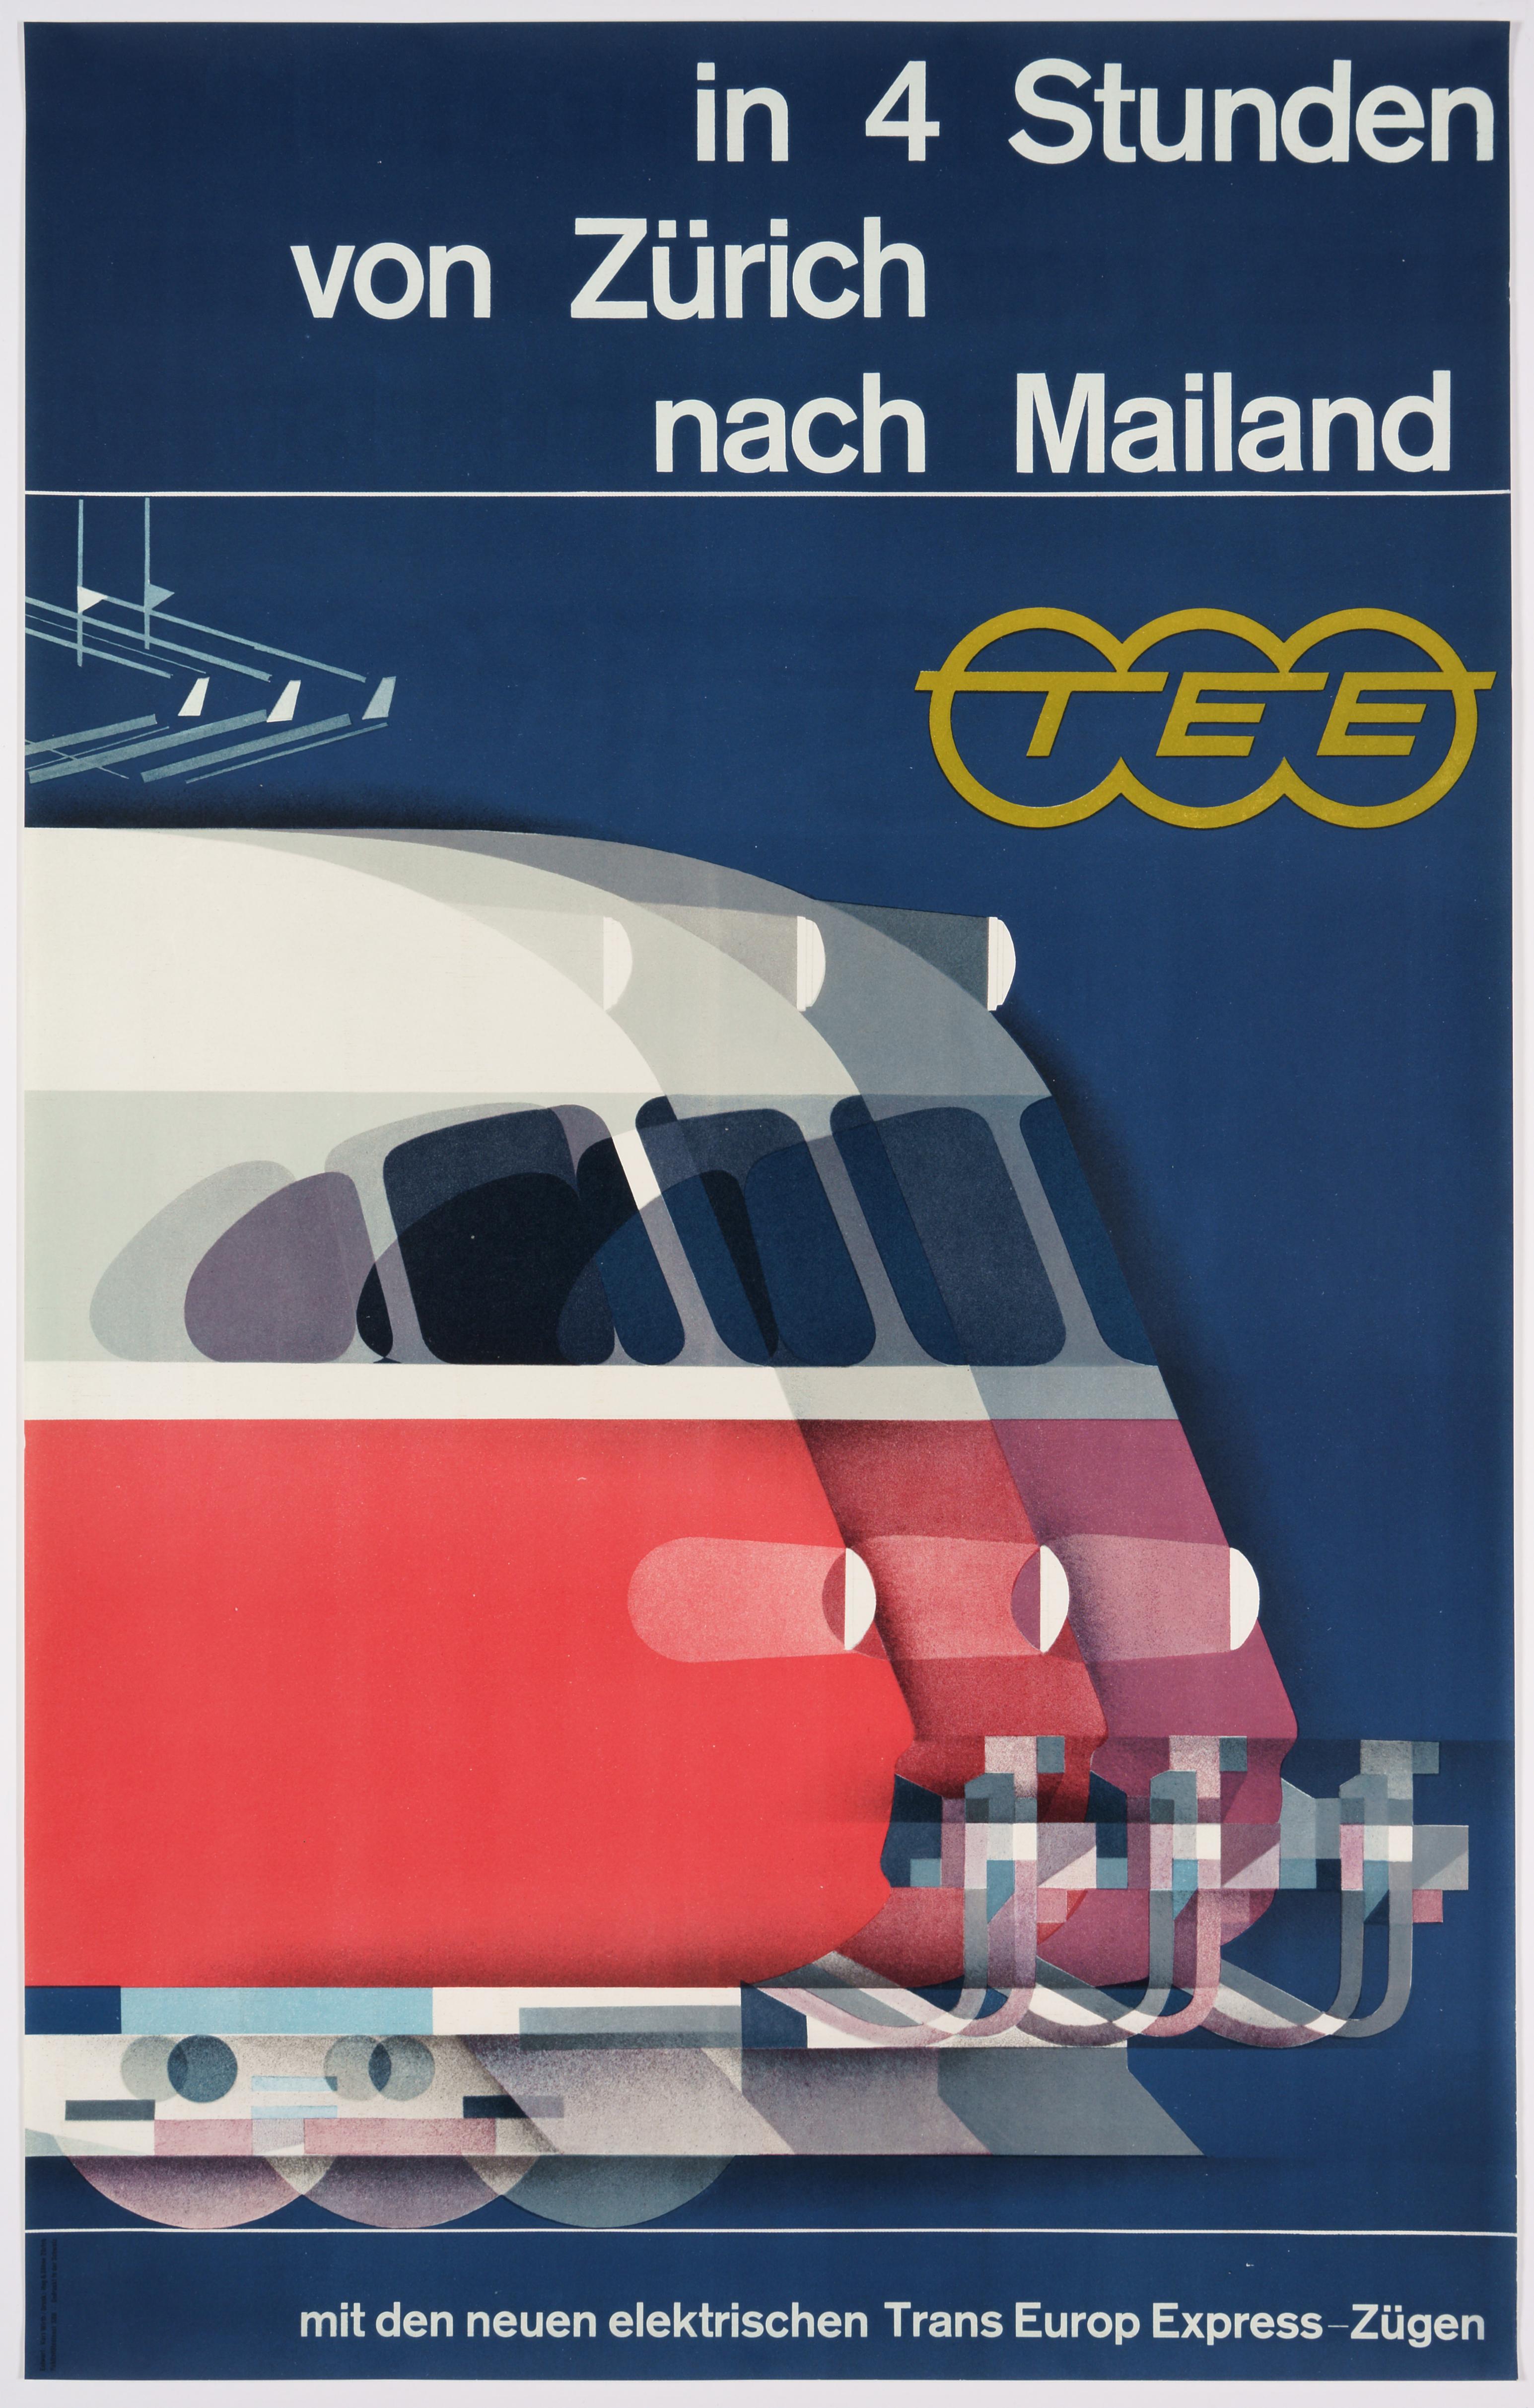 Trans Europ Express - Originalplakat für die Verbindung von Zürich nach Mailand